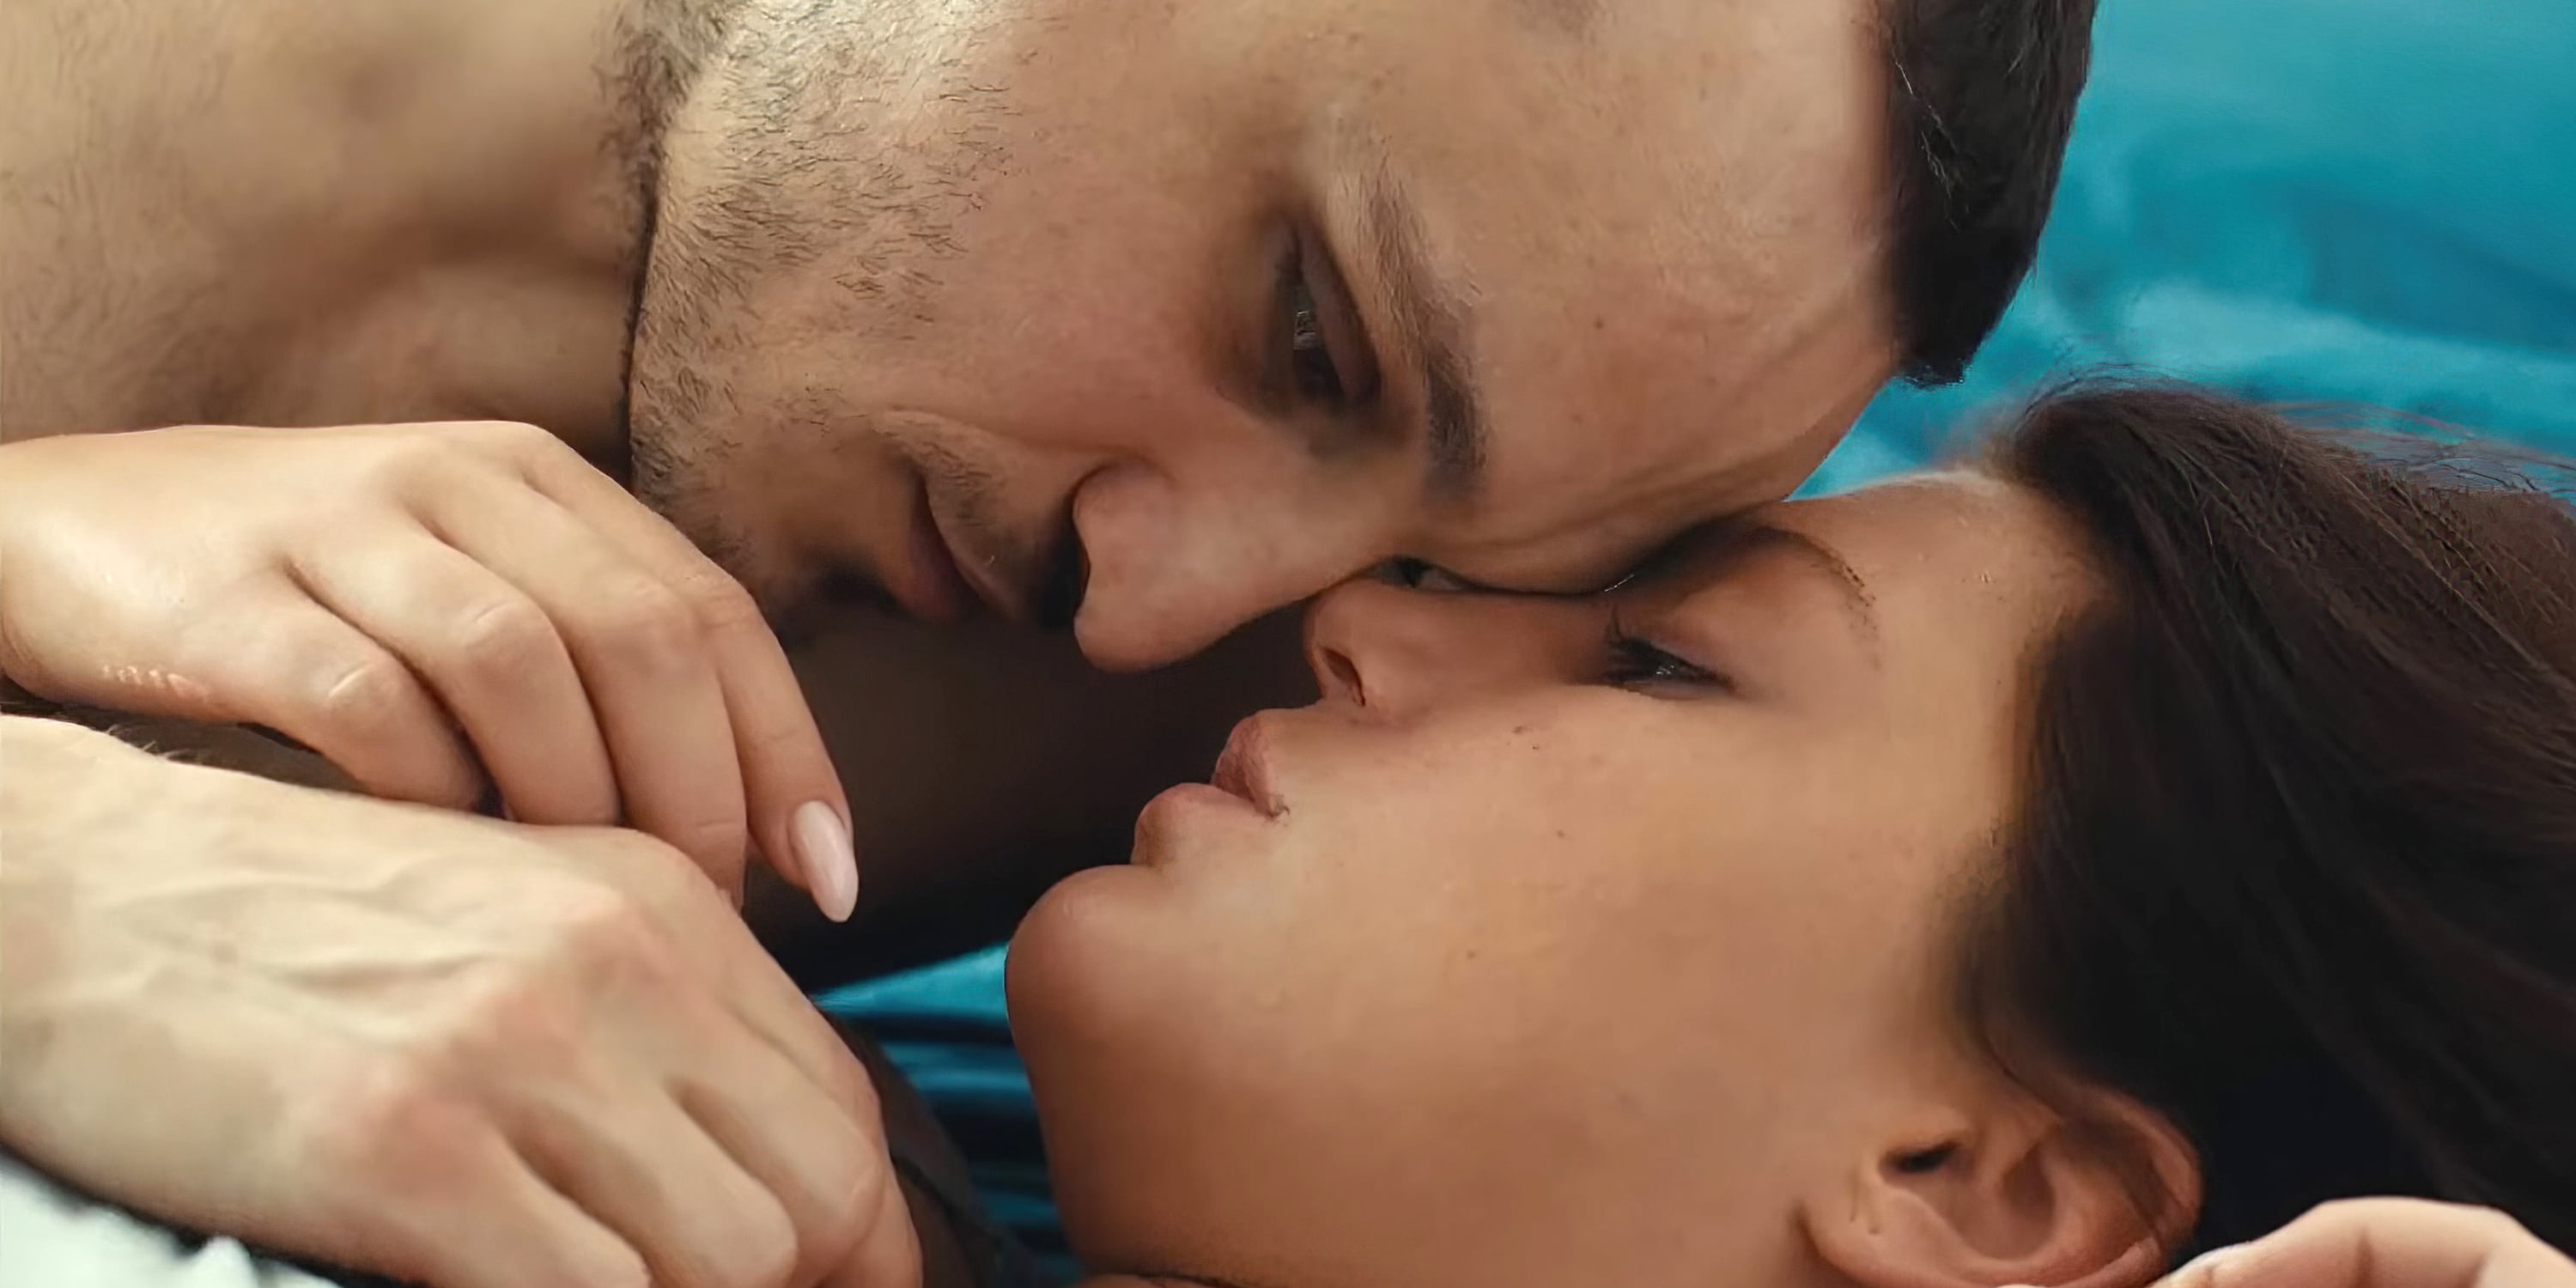 Sexiromance - Best NC-17 Movies to Watch | POPSUGAR Love & Sex